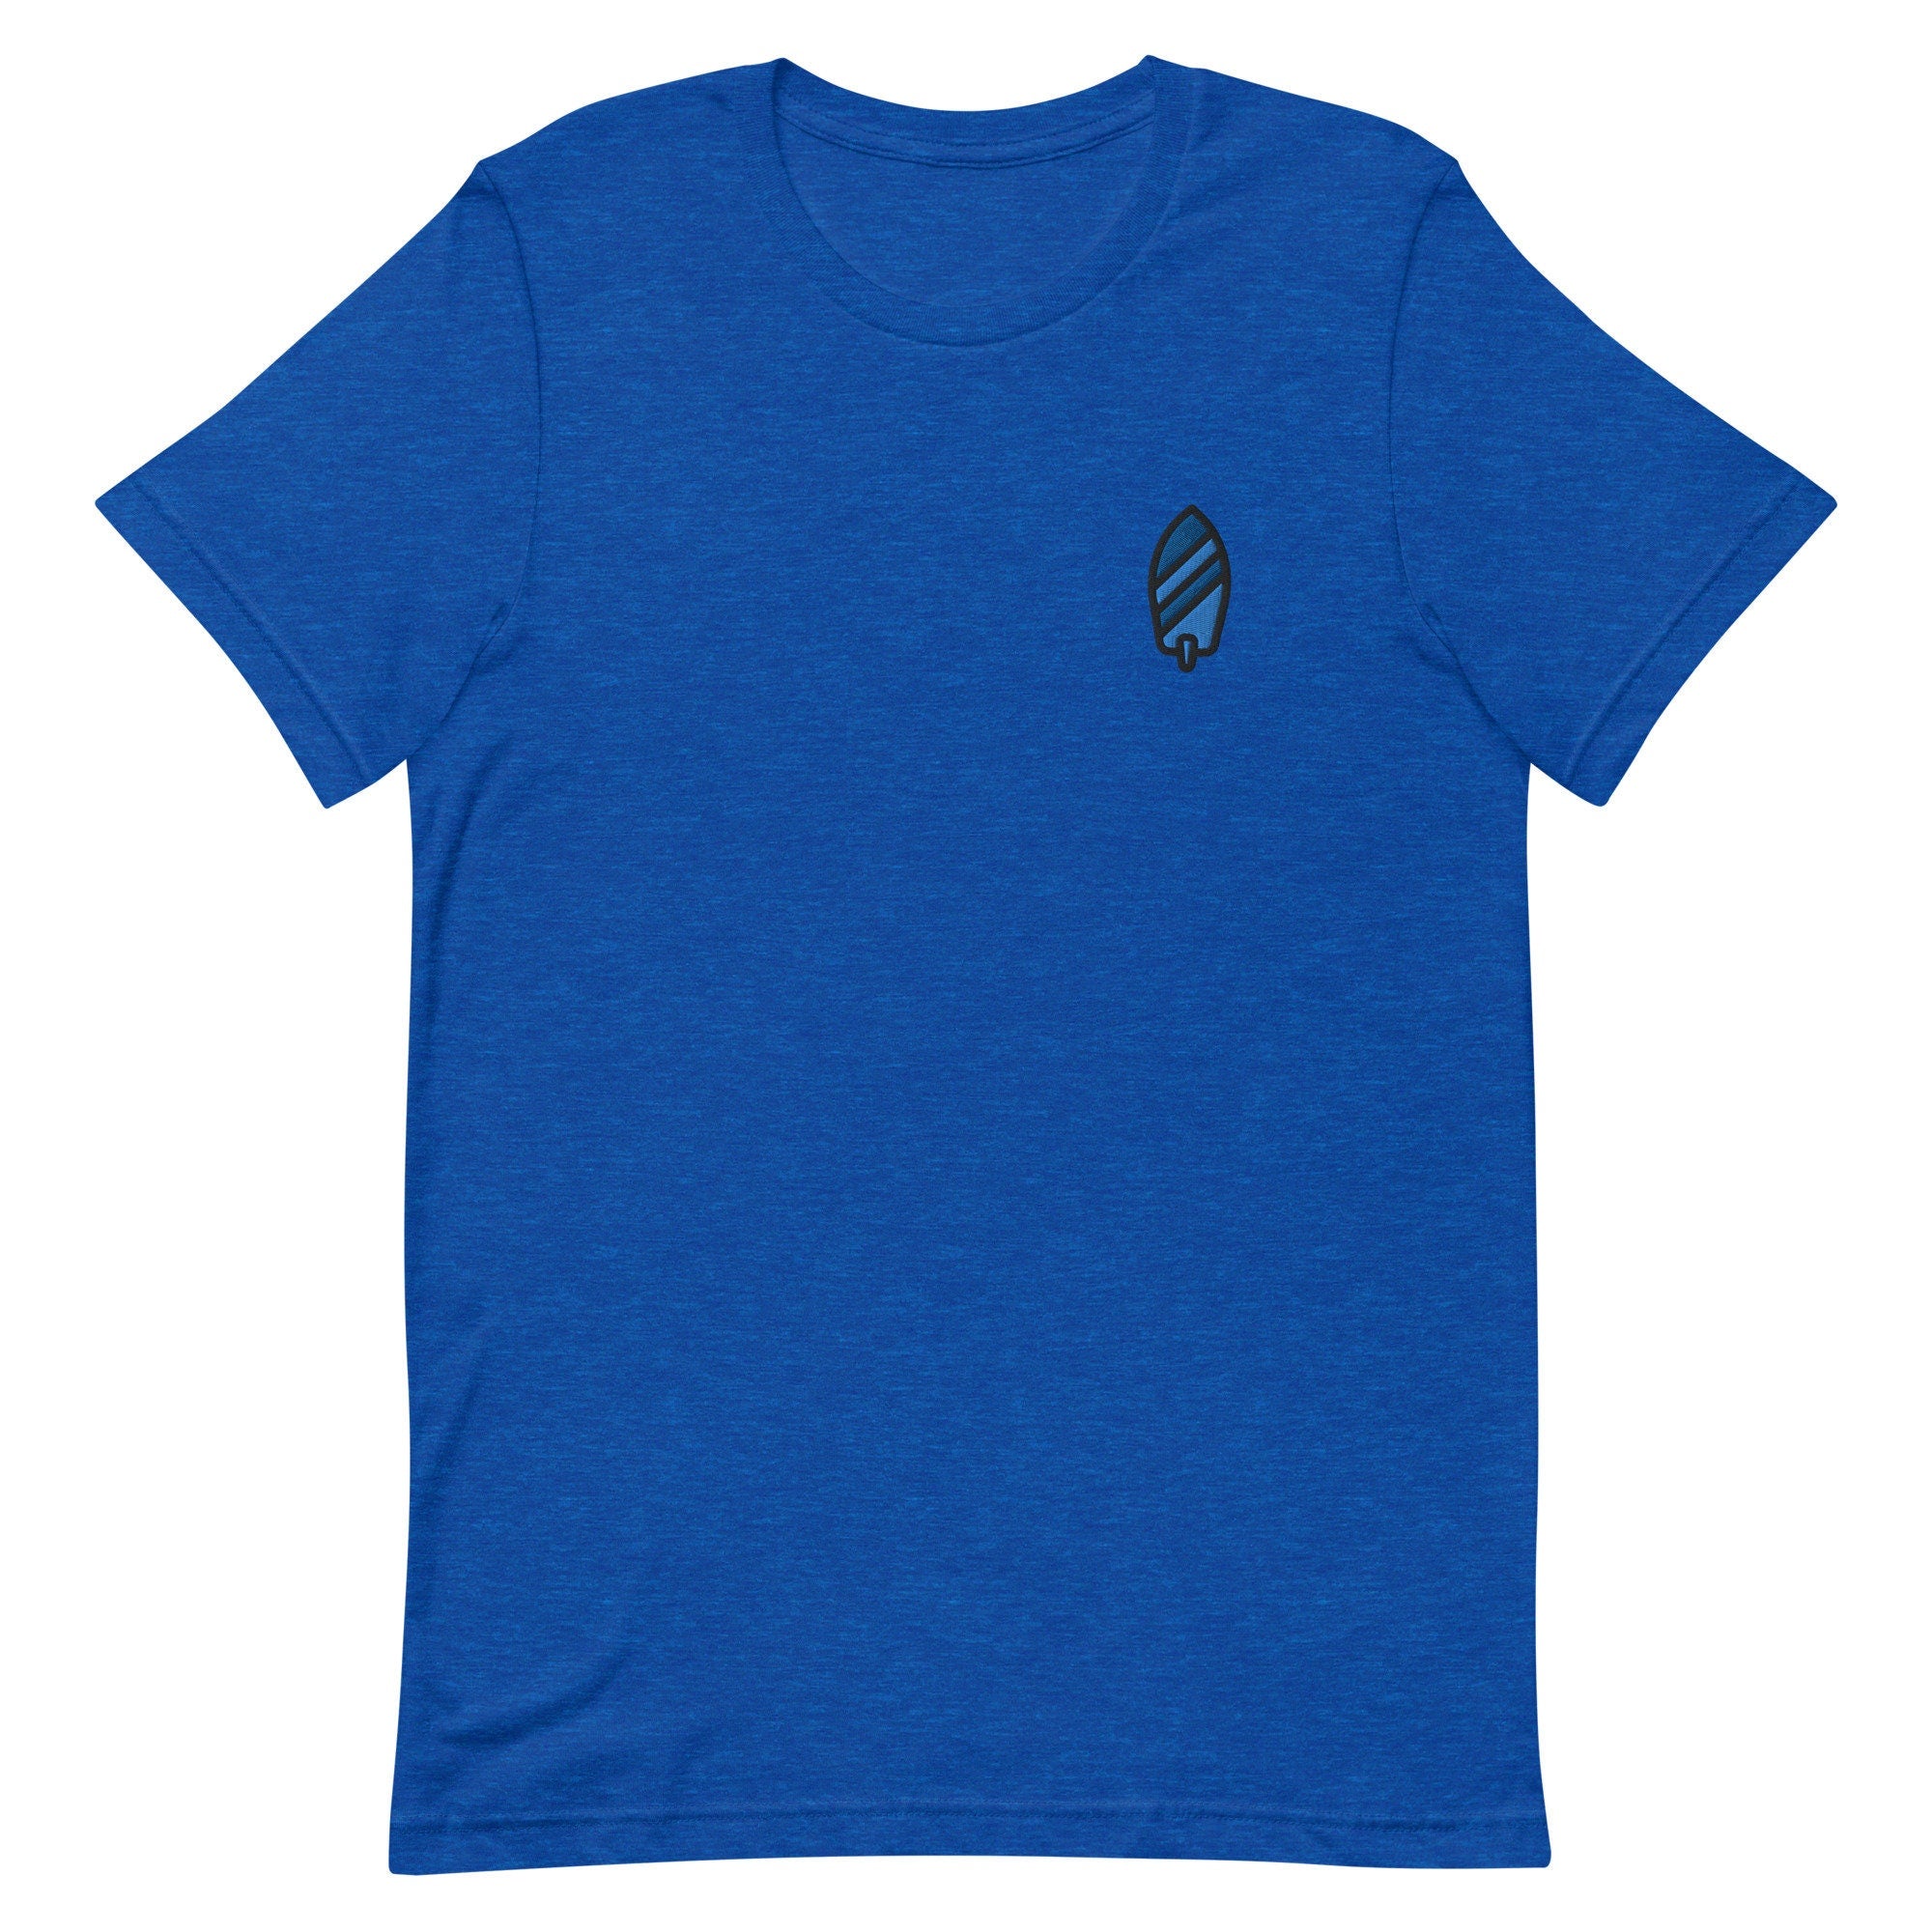 Surfboard Premium Men's T-Shirt, Embroidered Men's T-Shirt Gift for Boyfriend, Men's Short Sleeve Shirt - Multiple Colors